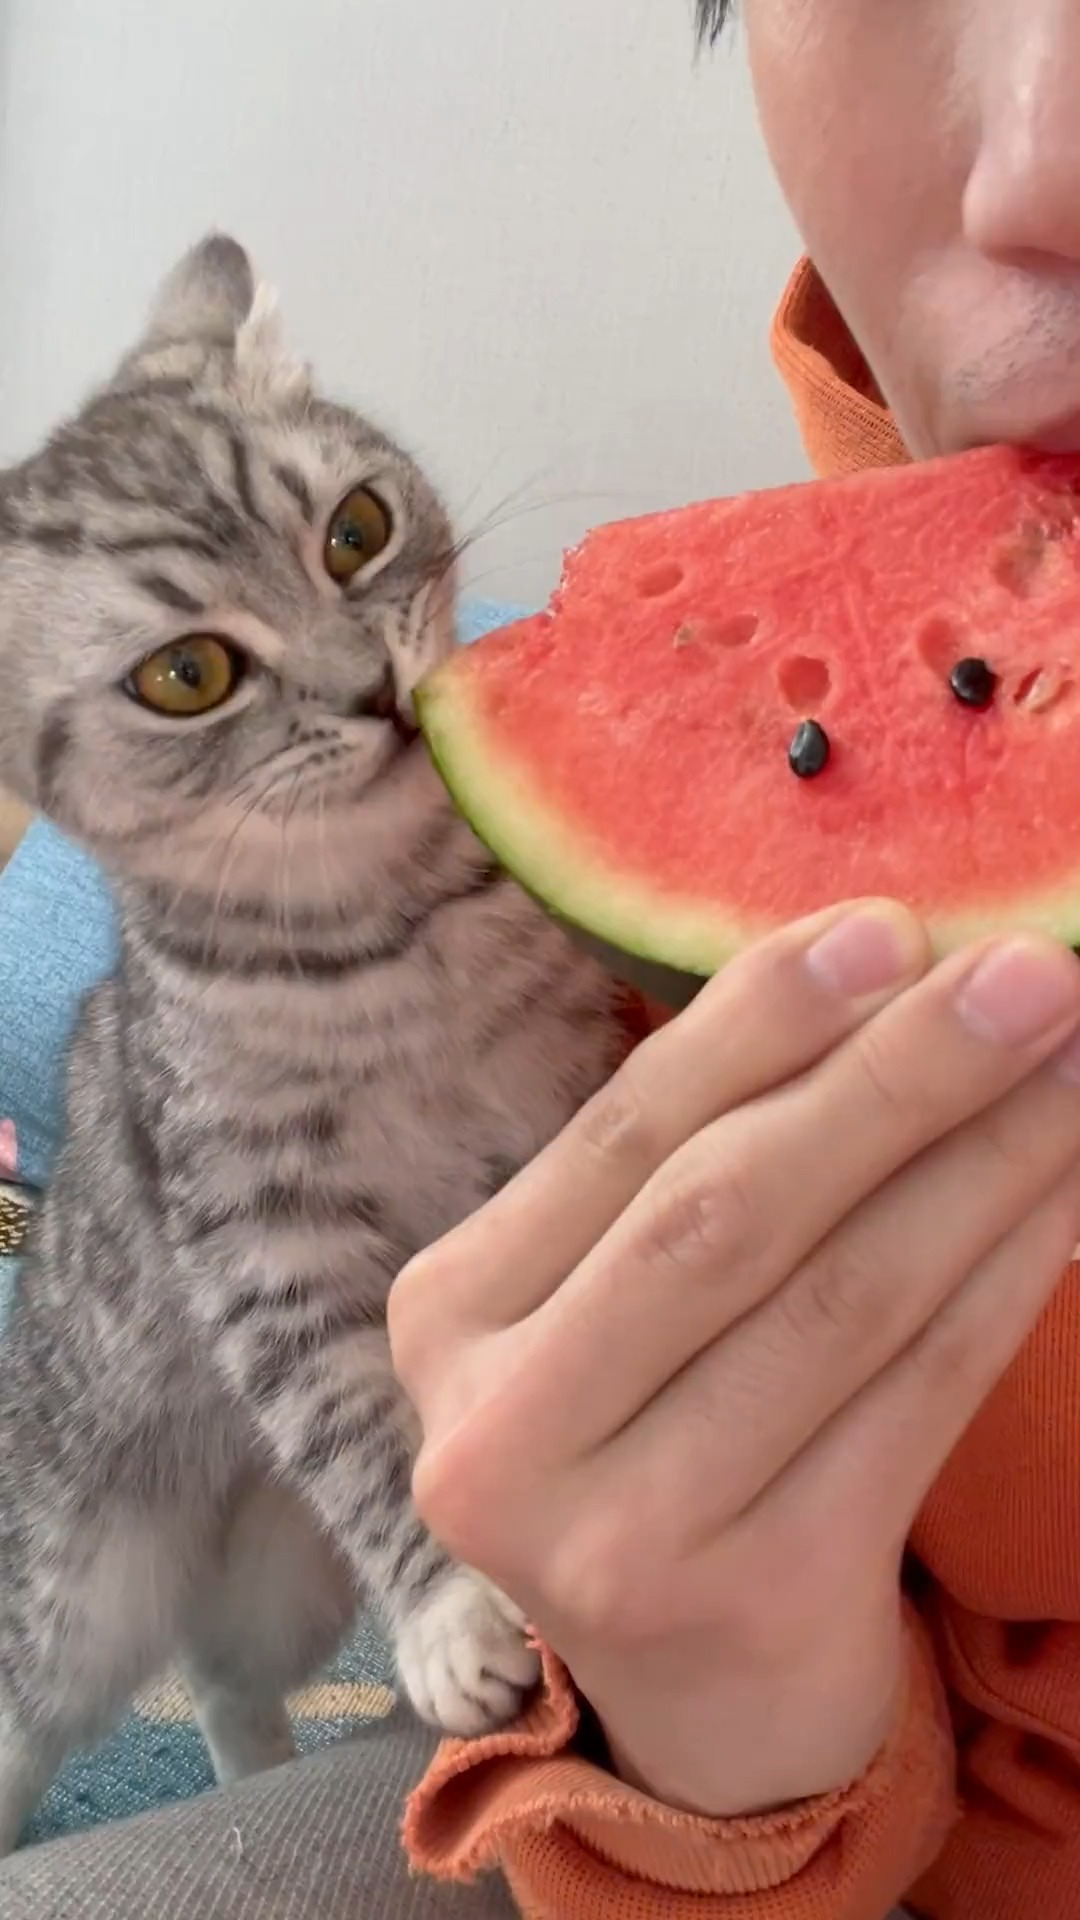 当一直吃西瓜皮的小猫咪突然吃到西瓜肉时，反应亮了~#猫咪的迷惑行为.#百万视友赐神评
